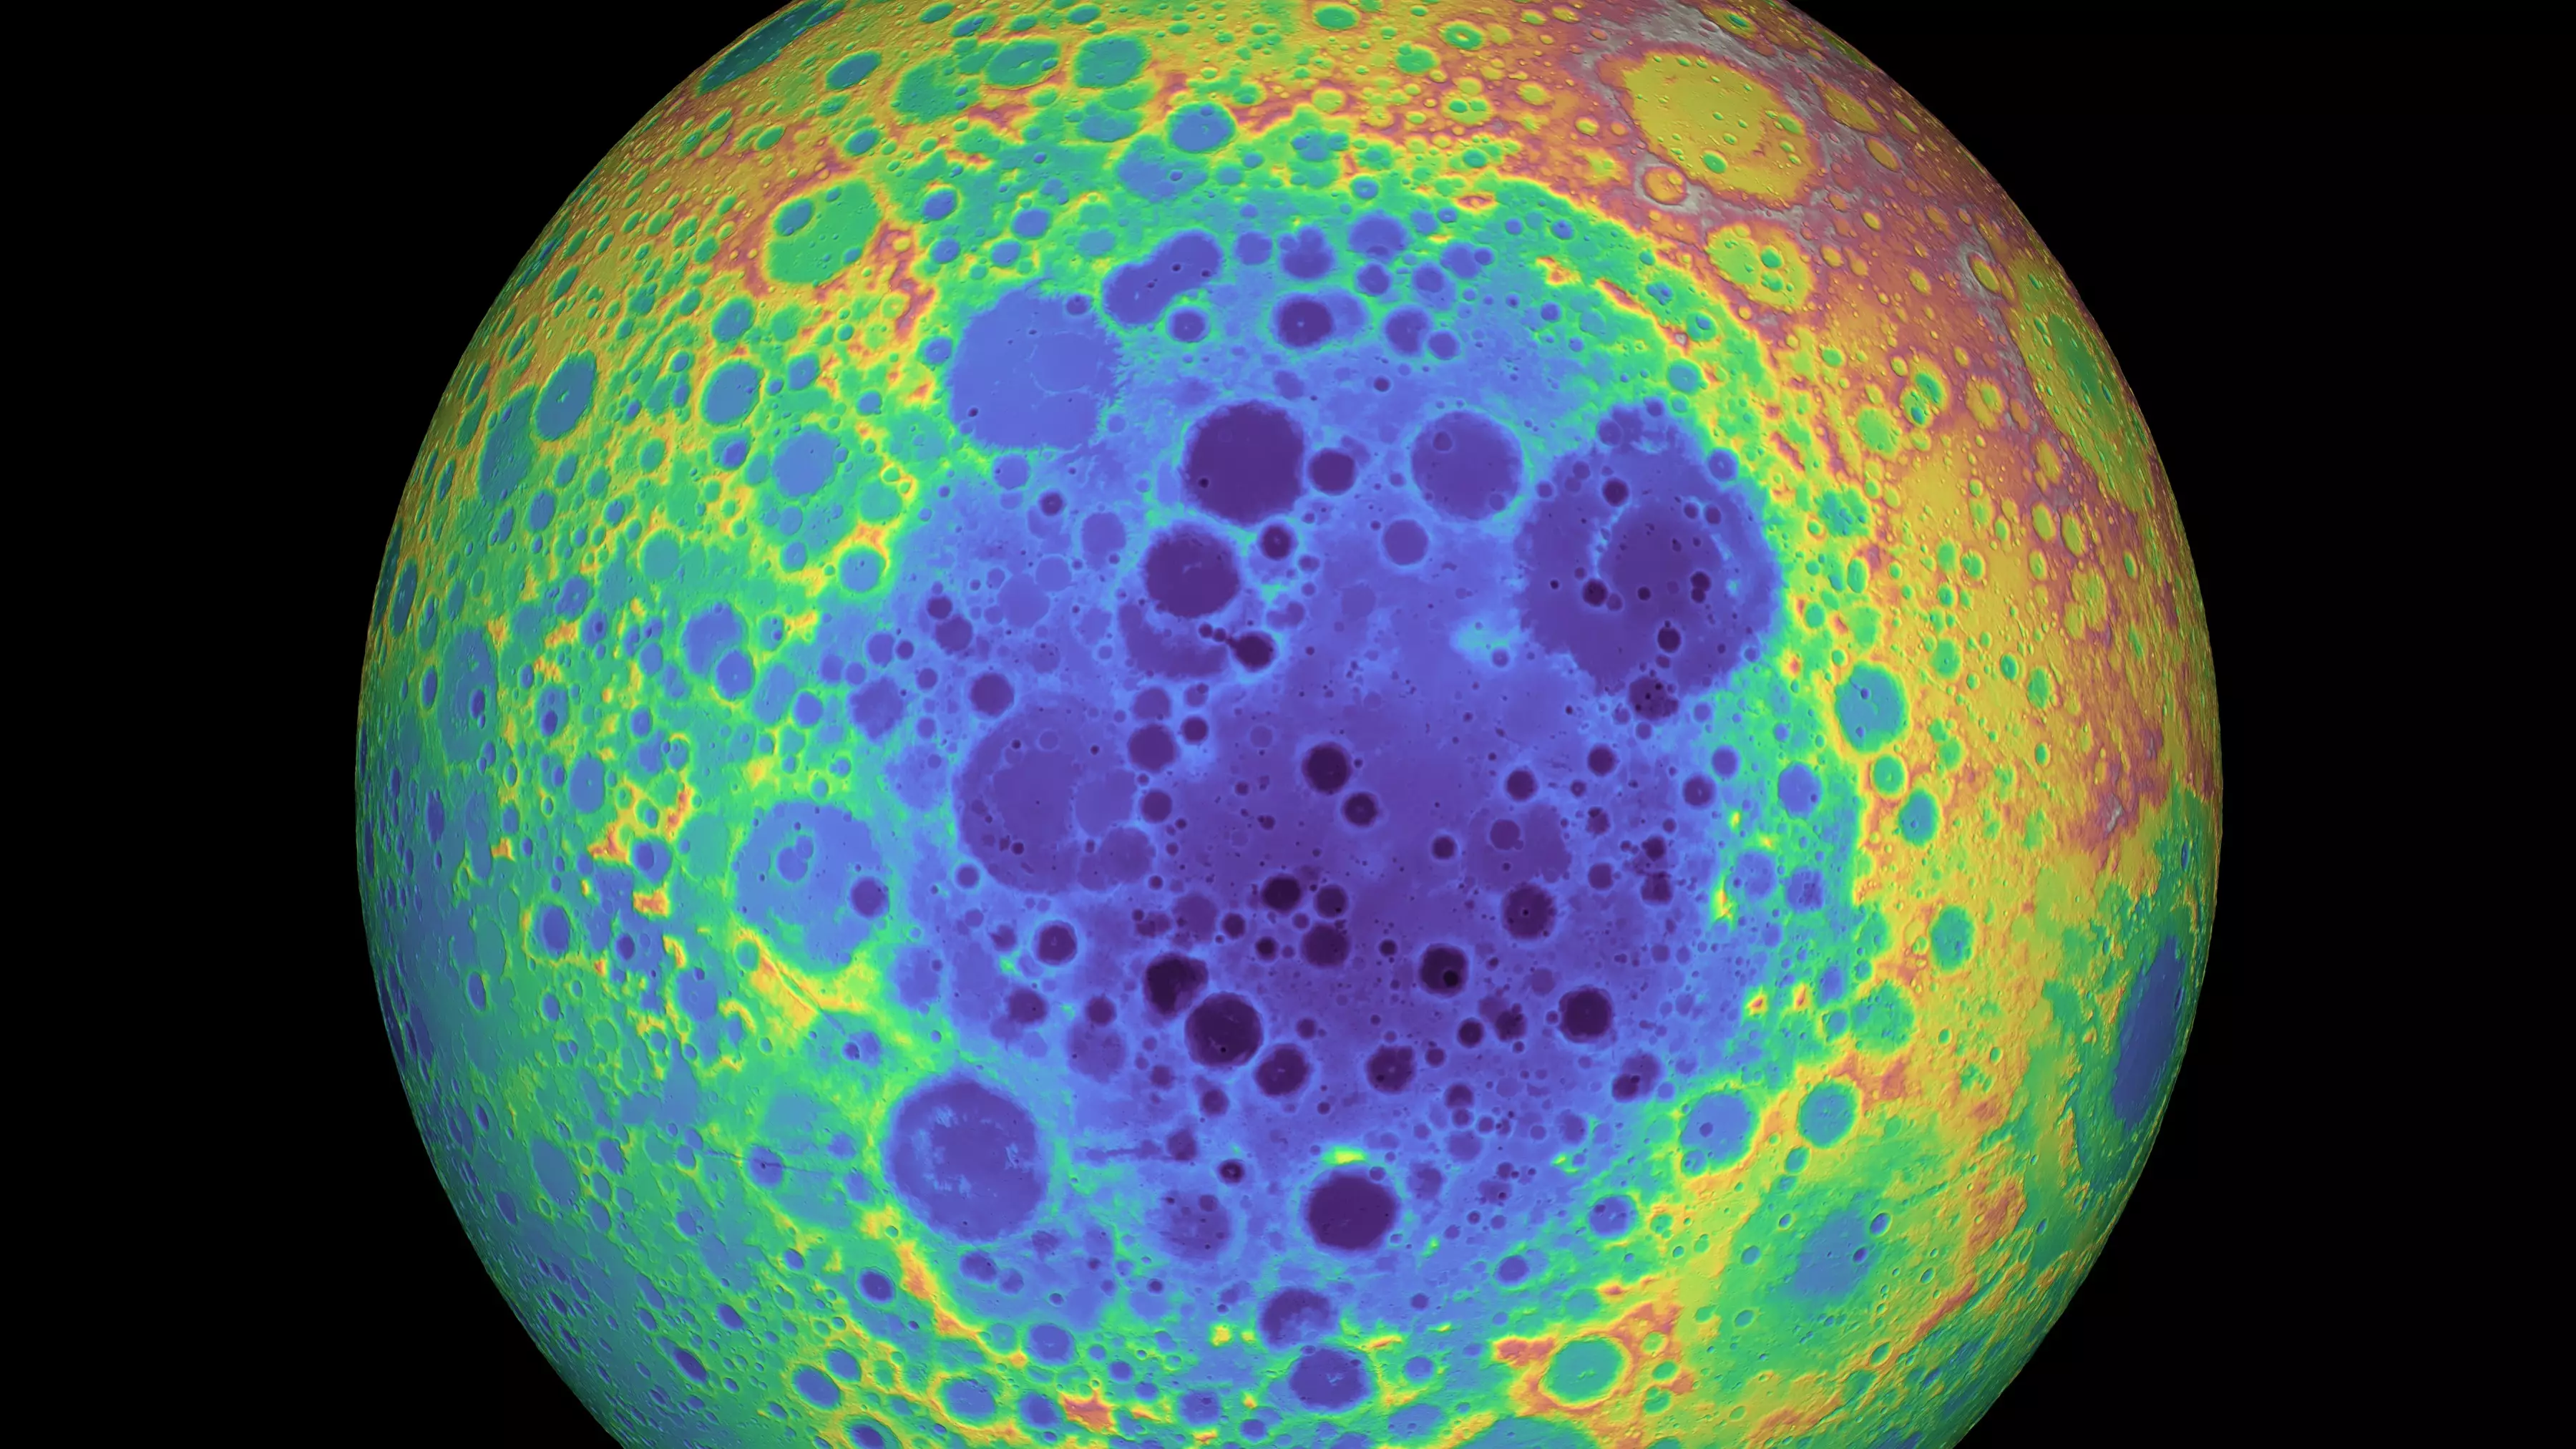 Айткенский бассейн (выделен фиолетовым цветом) представляет собой гигантский кратер от древнего падения метеорита